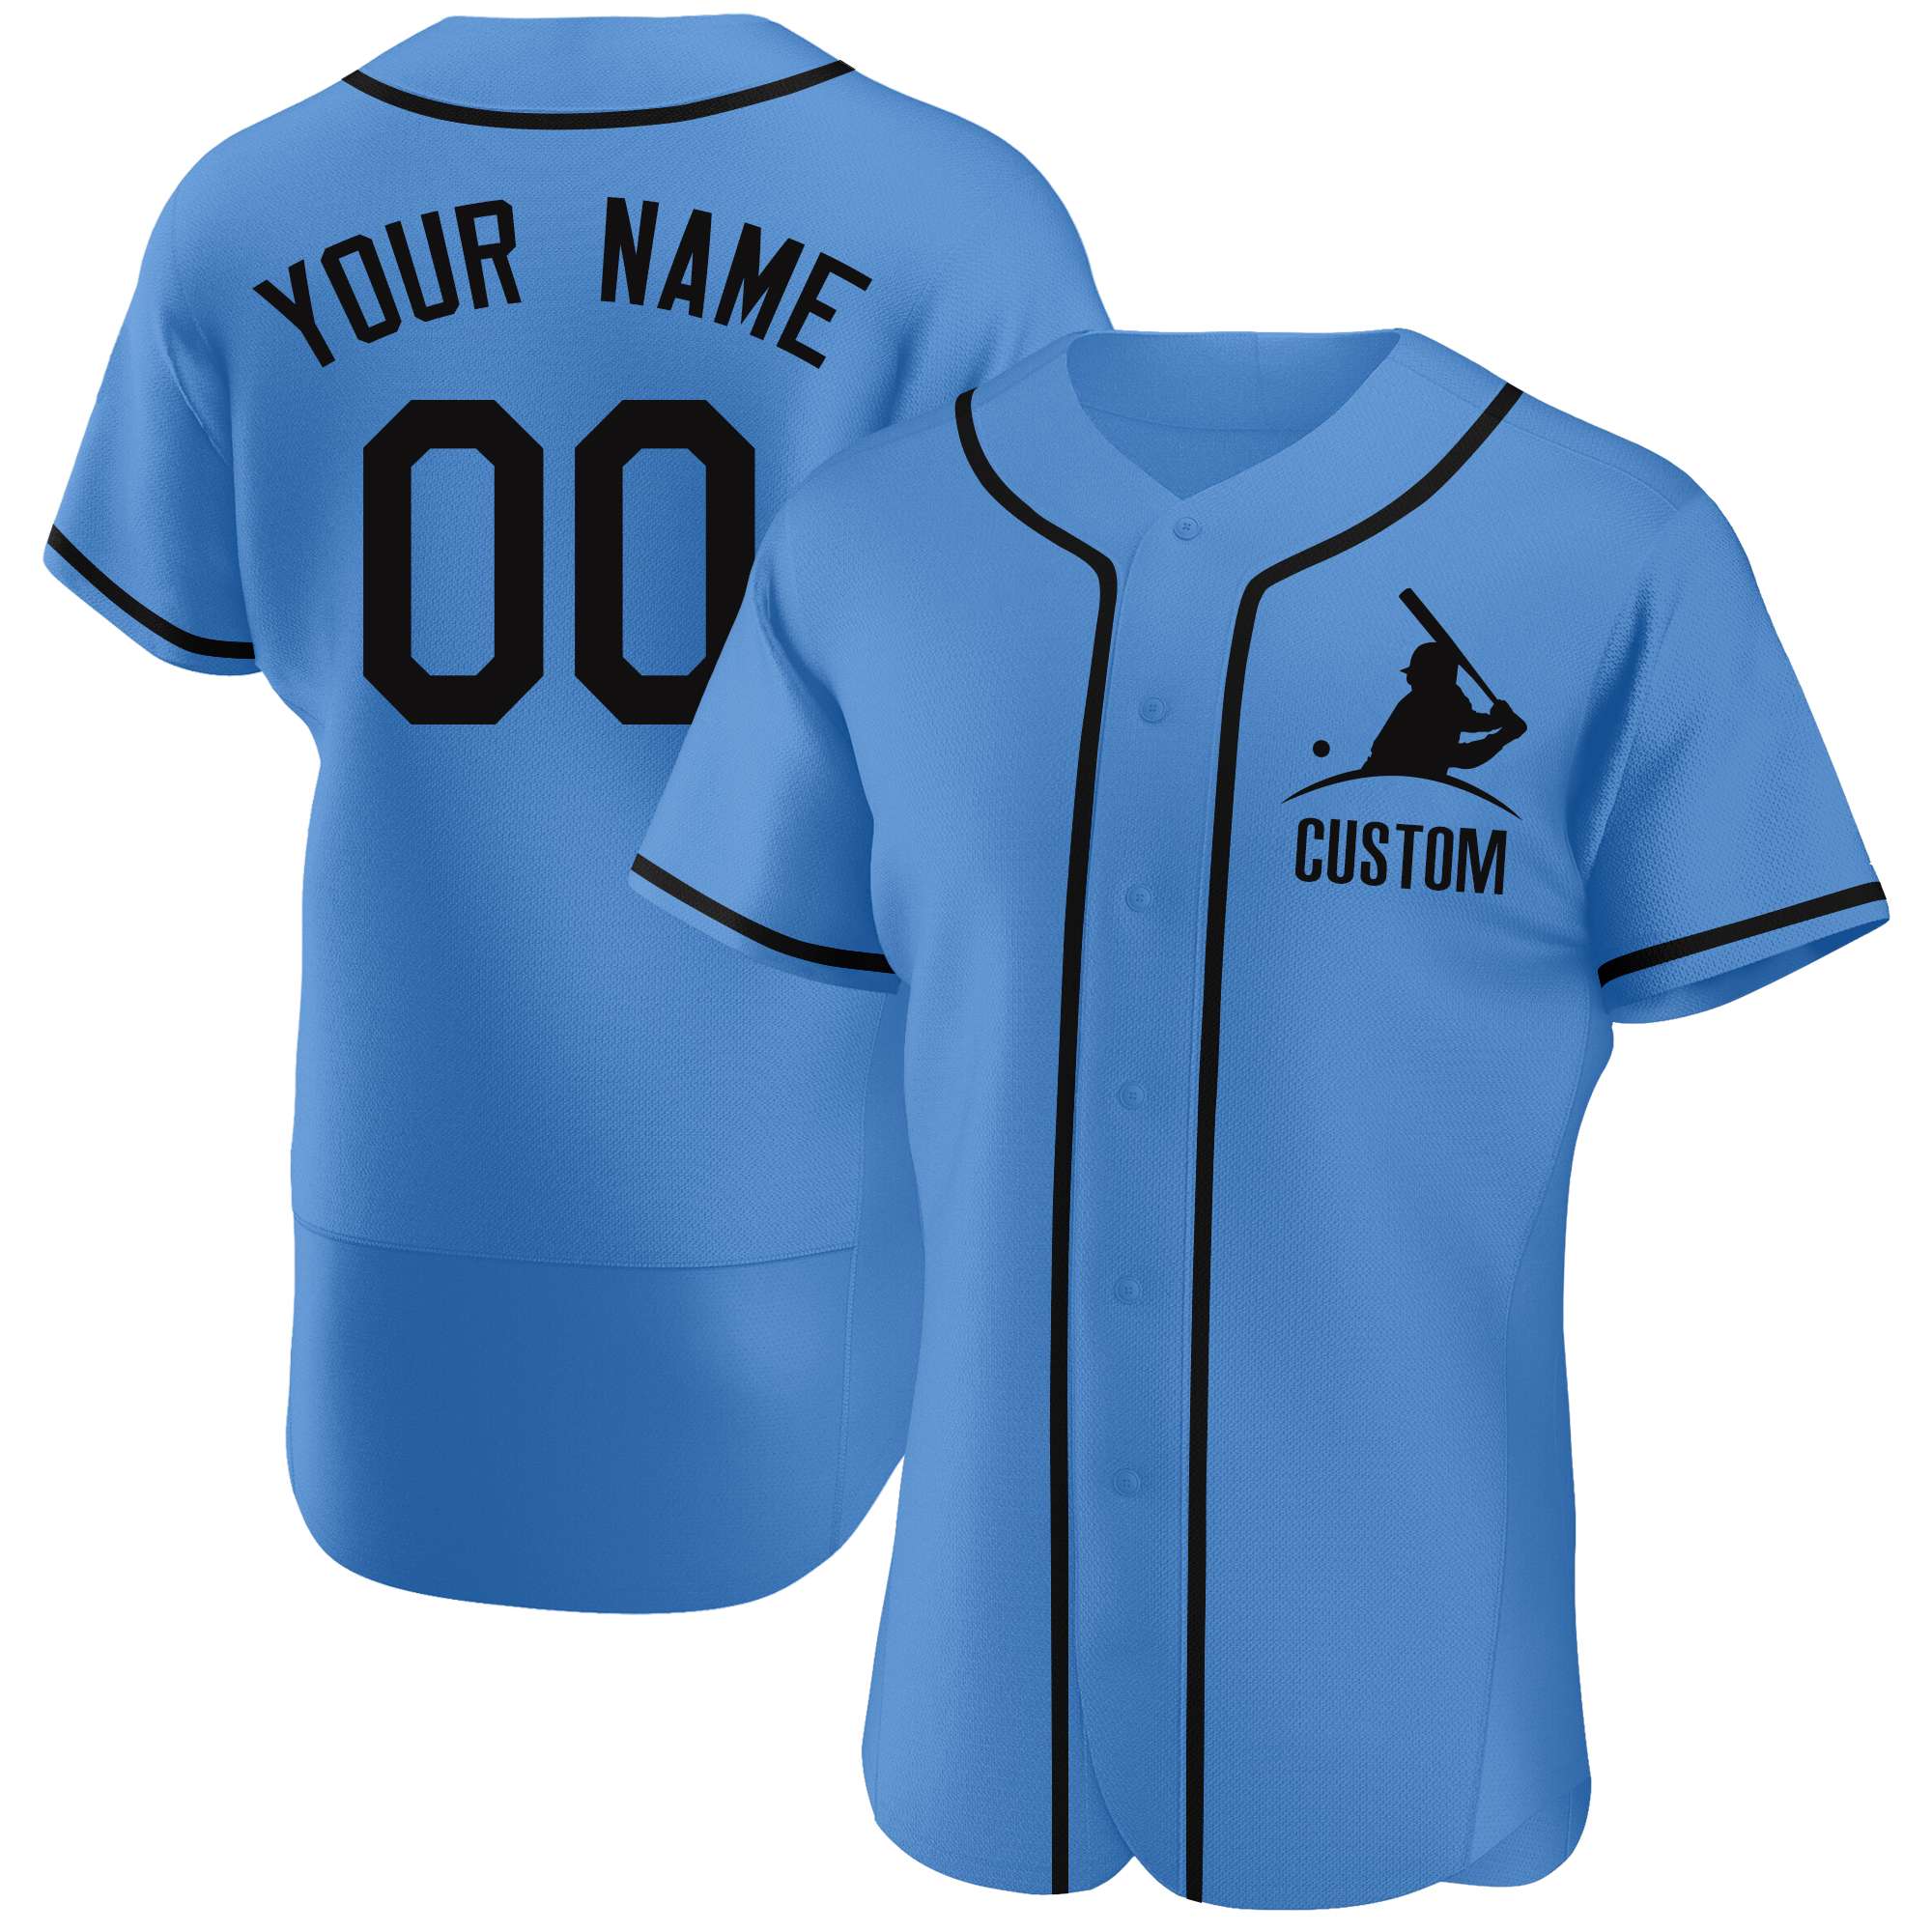 Custom Novel Baseball Jerseys Full Sublimation Design Name Number 100 Polyester Baseball Shirt Softball Uniforms Men 2